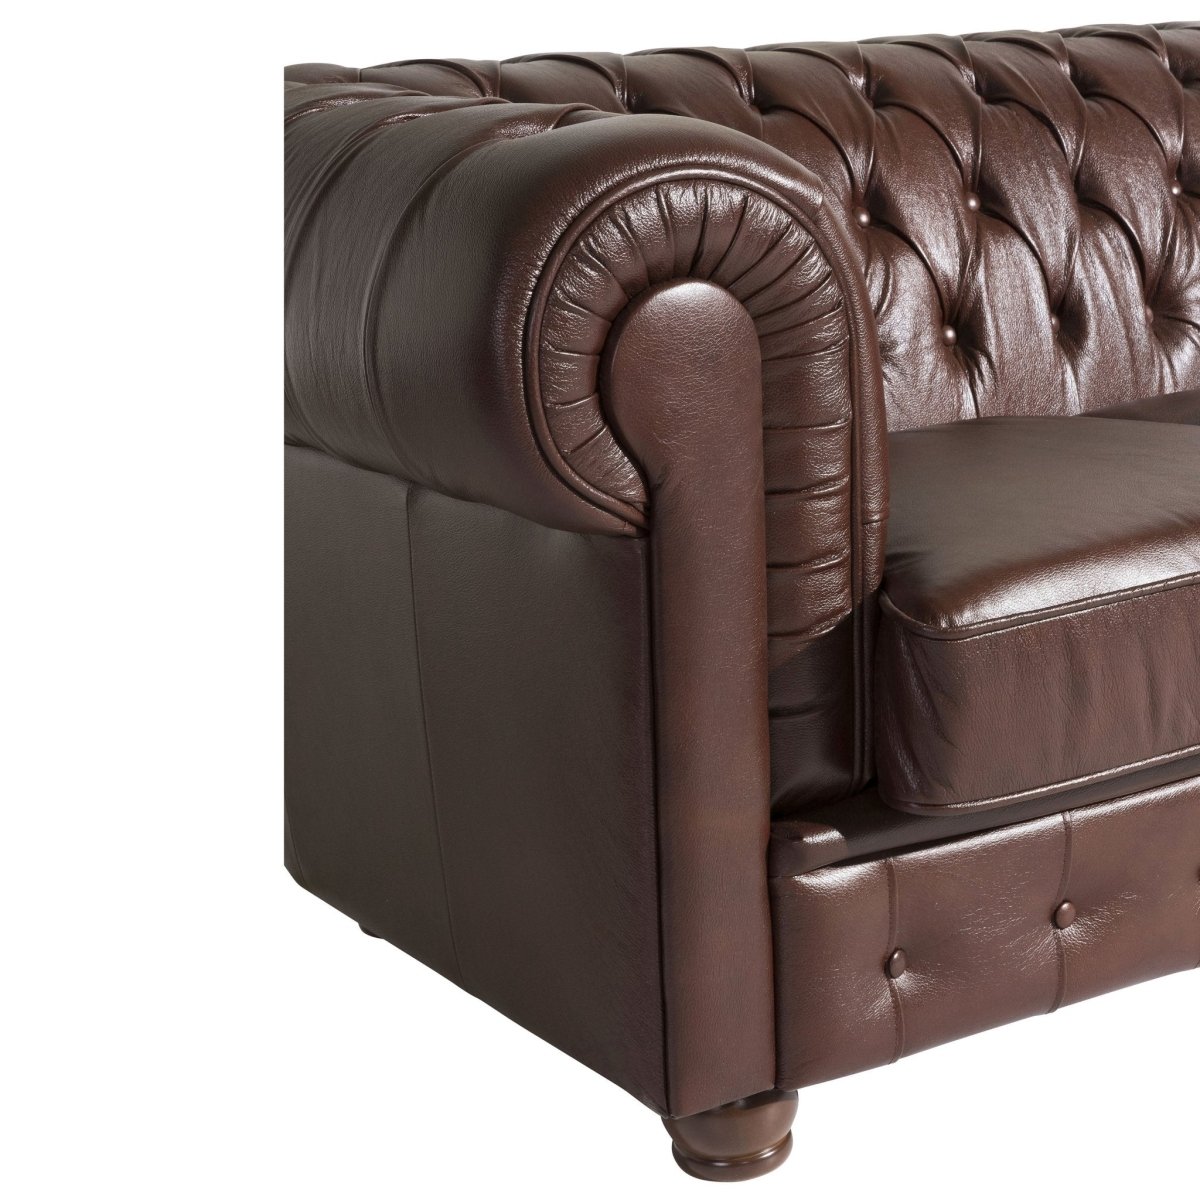 Max Winzer - 3-Sitzer Sofa Bridgeport 100% Wischleder in 2 Farben